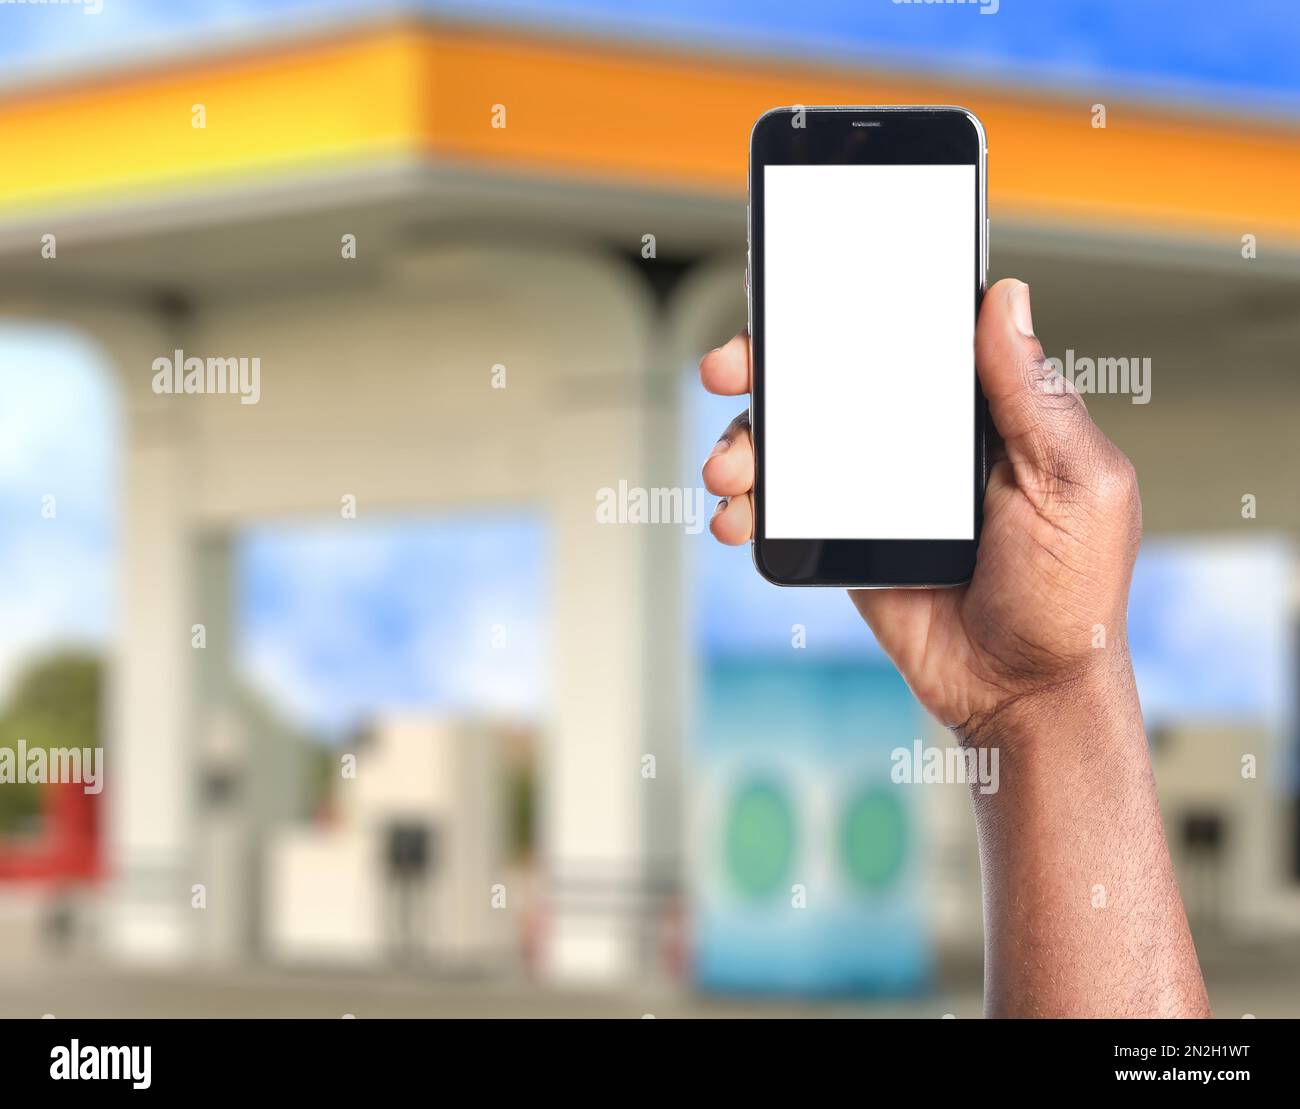 Ein afroamerikanischer Mann, der per Smartphone für das Betanken an der  Tankstelle bezahlt, Nahaufnahme. Gerät mit leerem Bildschirm  Stockfotografie - Alamy